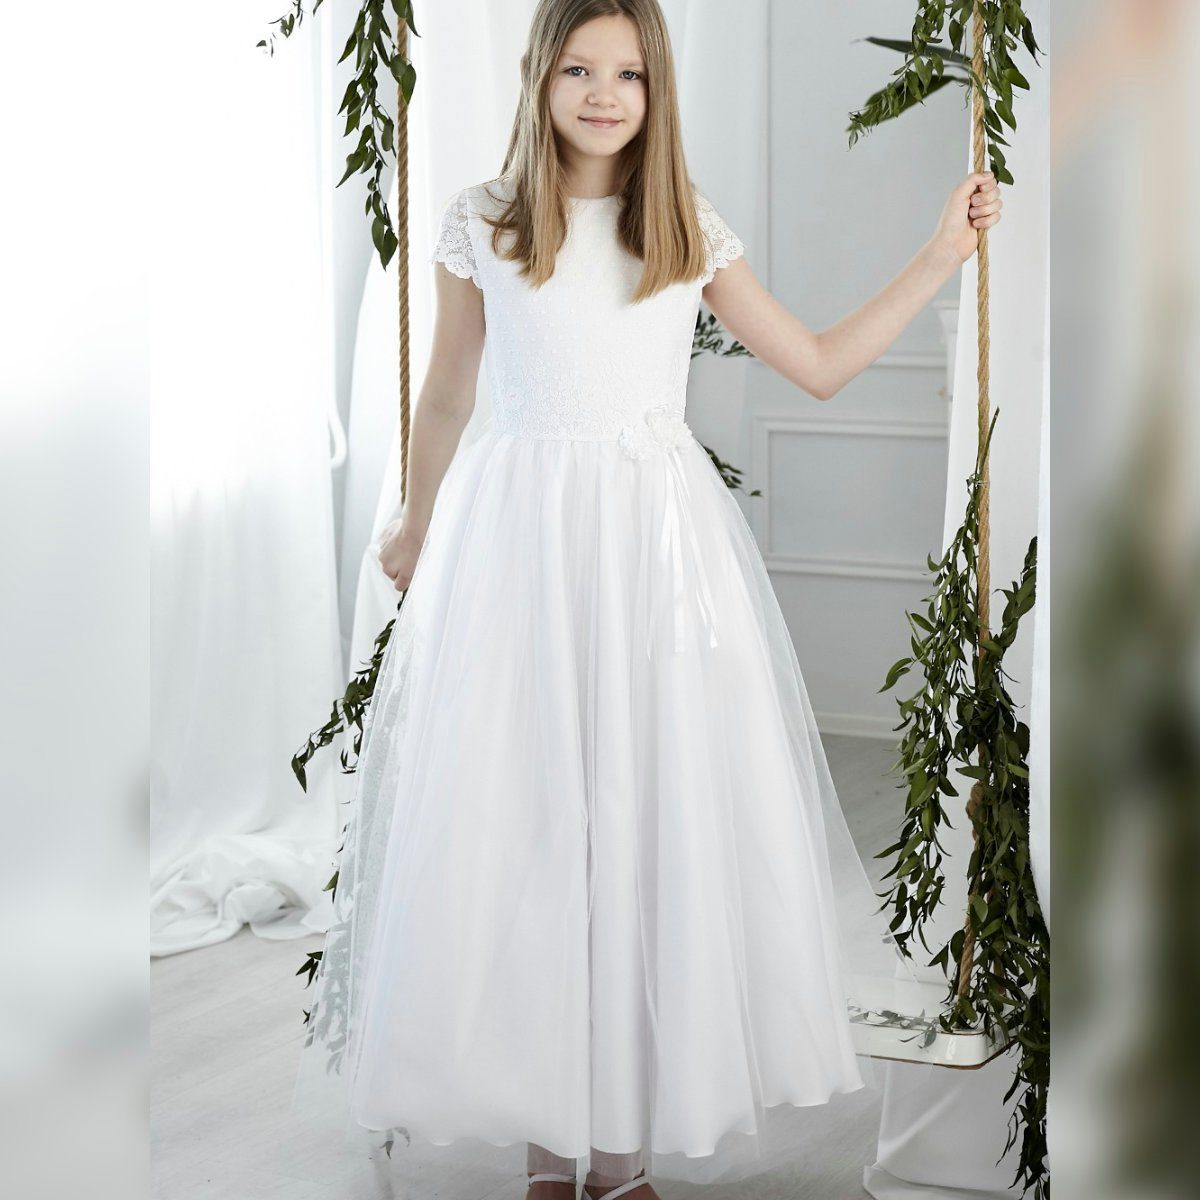 Dalary Dalary Tüllkleid Kommunionkleid DK-223 Weiß Blumenmädchenkleid